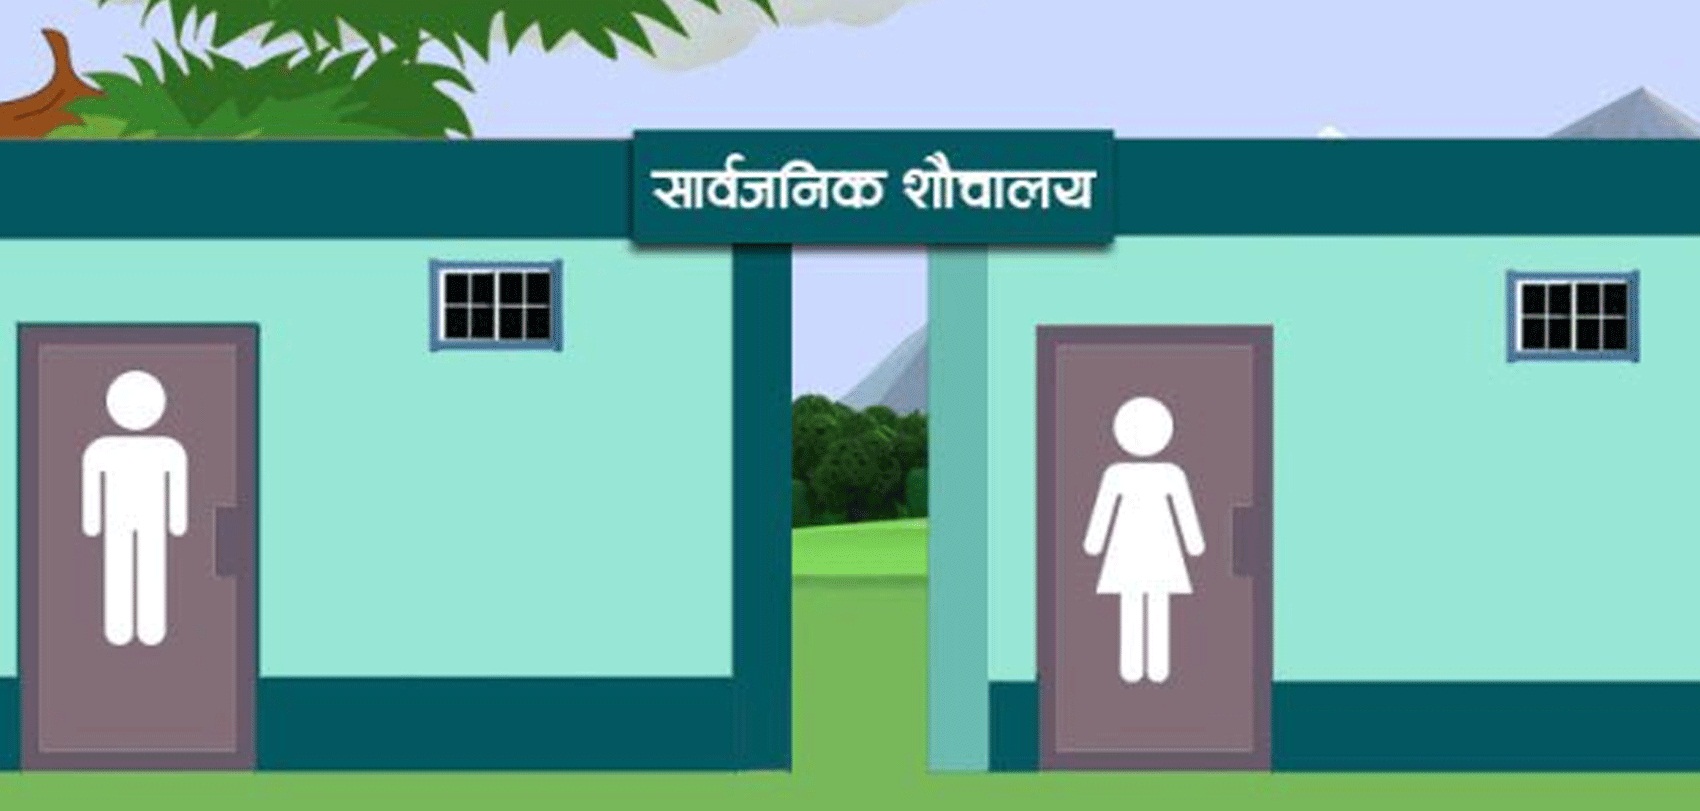 विश्व शौचालय दिवसका अवसरमा चेतनामूलक कार्यक्रम गरिँदै